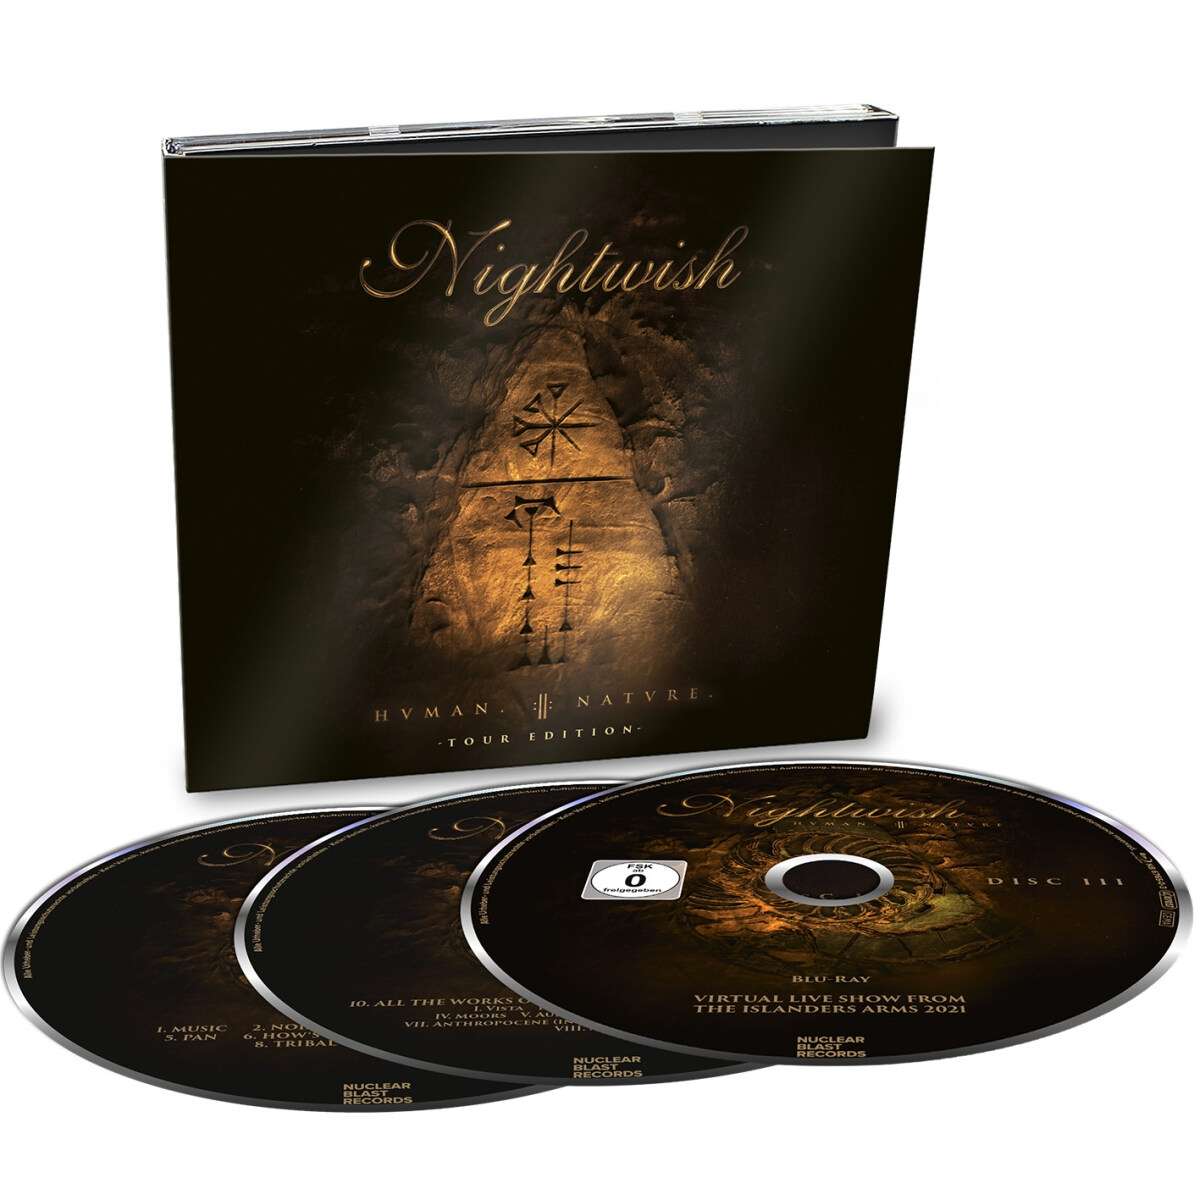 Osta Nightwish Humaniinature Cd Levy Netistä Sumashopfi